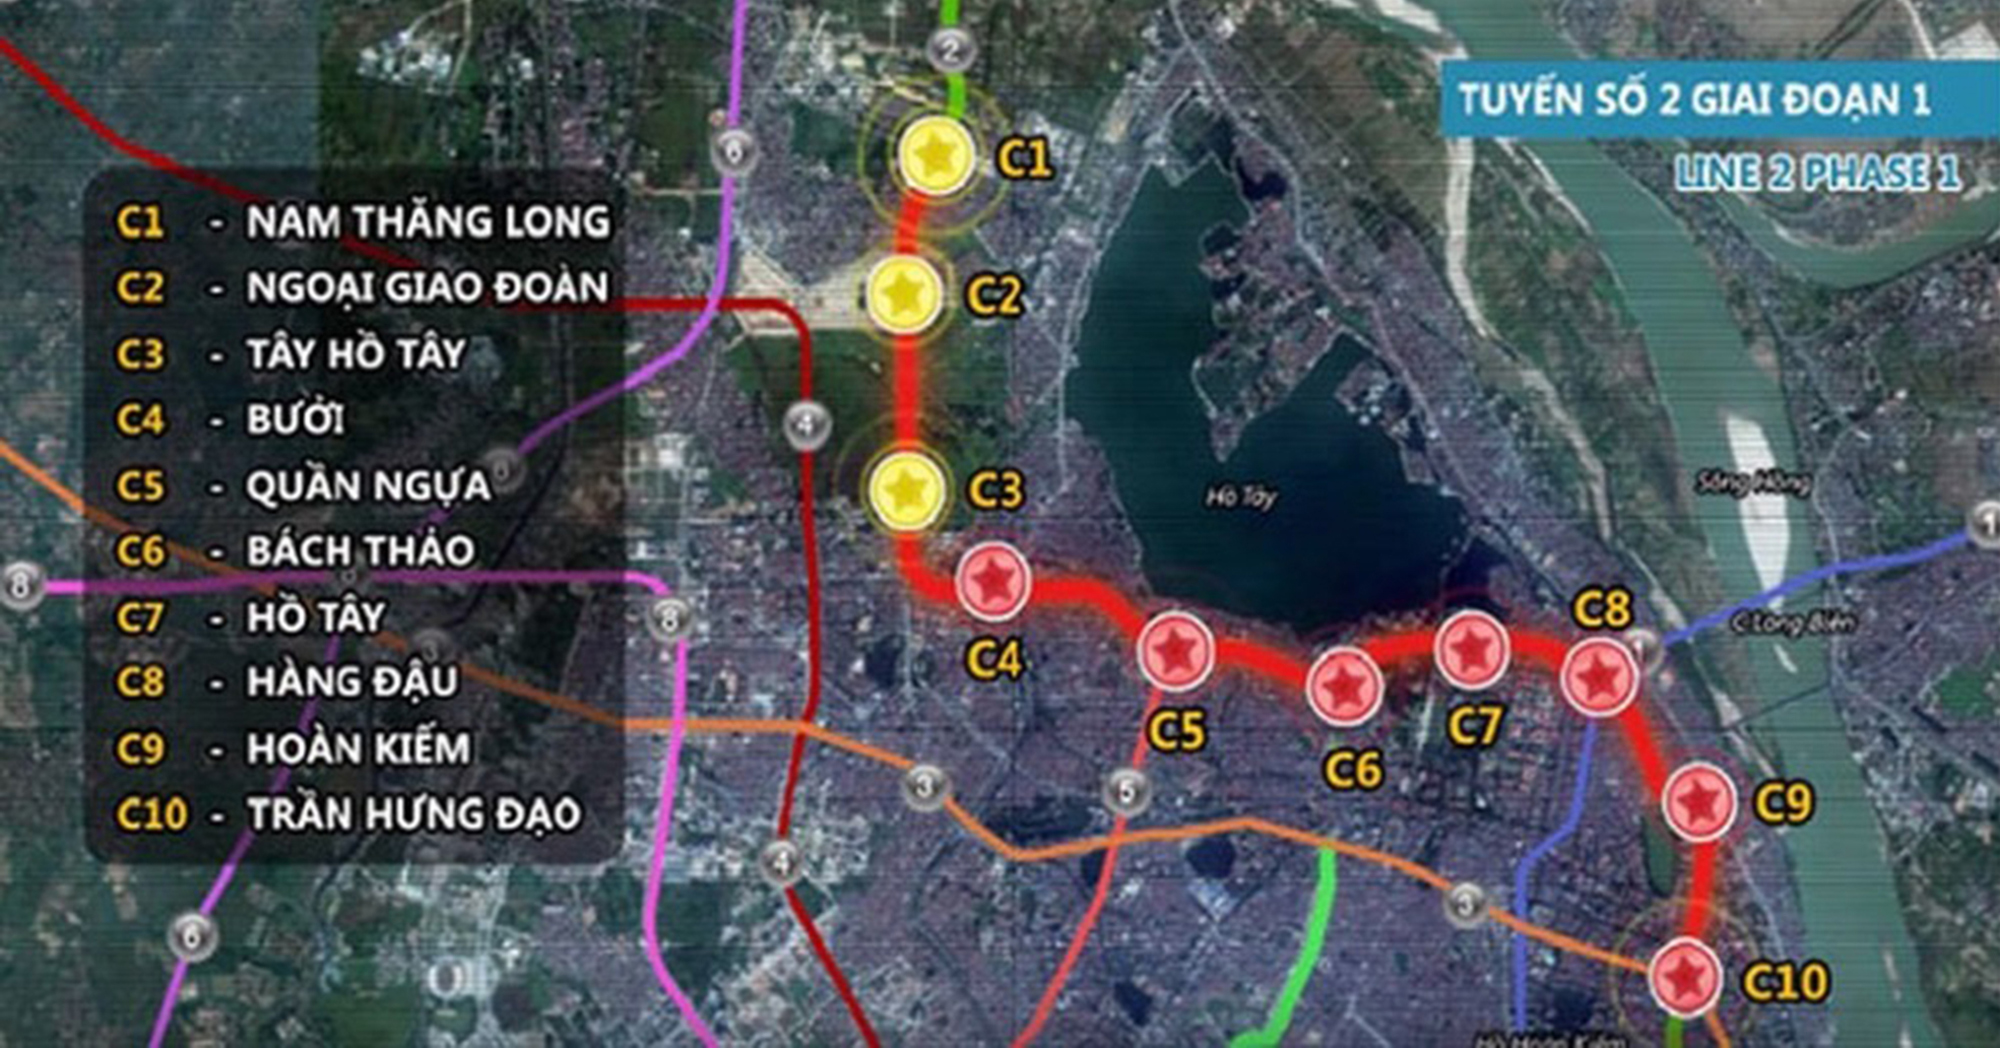 Toàn cảnh dự án đường sắt đô thị hơn 35.000 tỷ nối hàng loạt khu đô thị như Nam Thăng Long, Tây Hồ Tây đến trung tâm phố cổ Hà Nội- Ảnh 1.